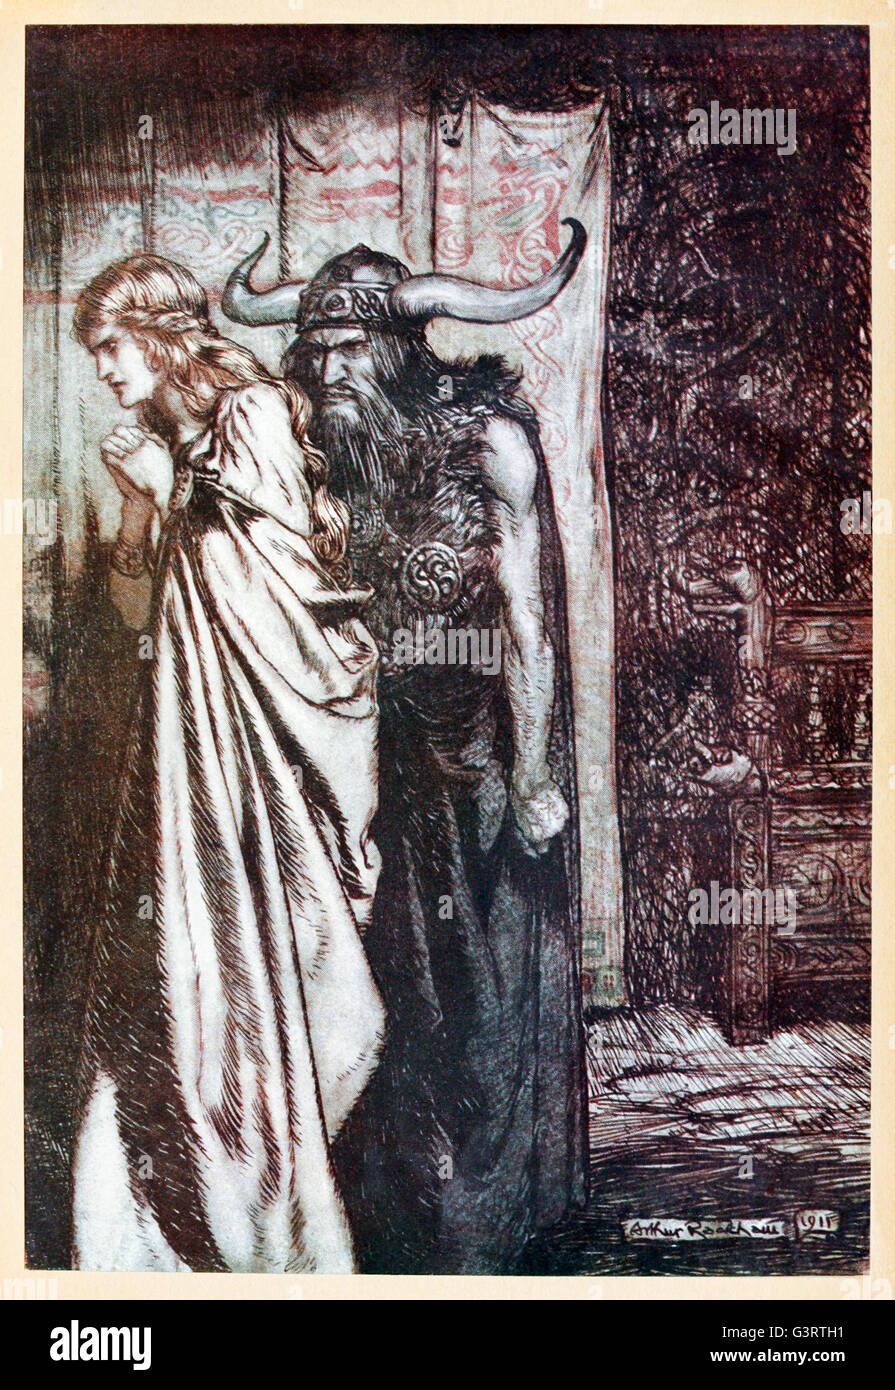 "O femme trahie, je vengerai ta confiance trompée"" à partir de "& Siegfried Le Crépuscule des dieux' illustré par Arthur Rackham (1867-1939). Voir la description pour plus d'informations. Banque D'Images